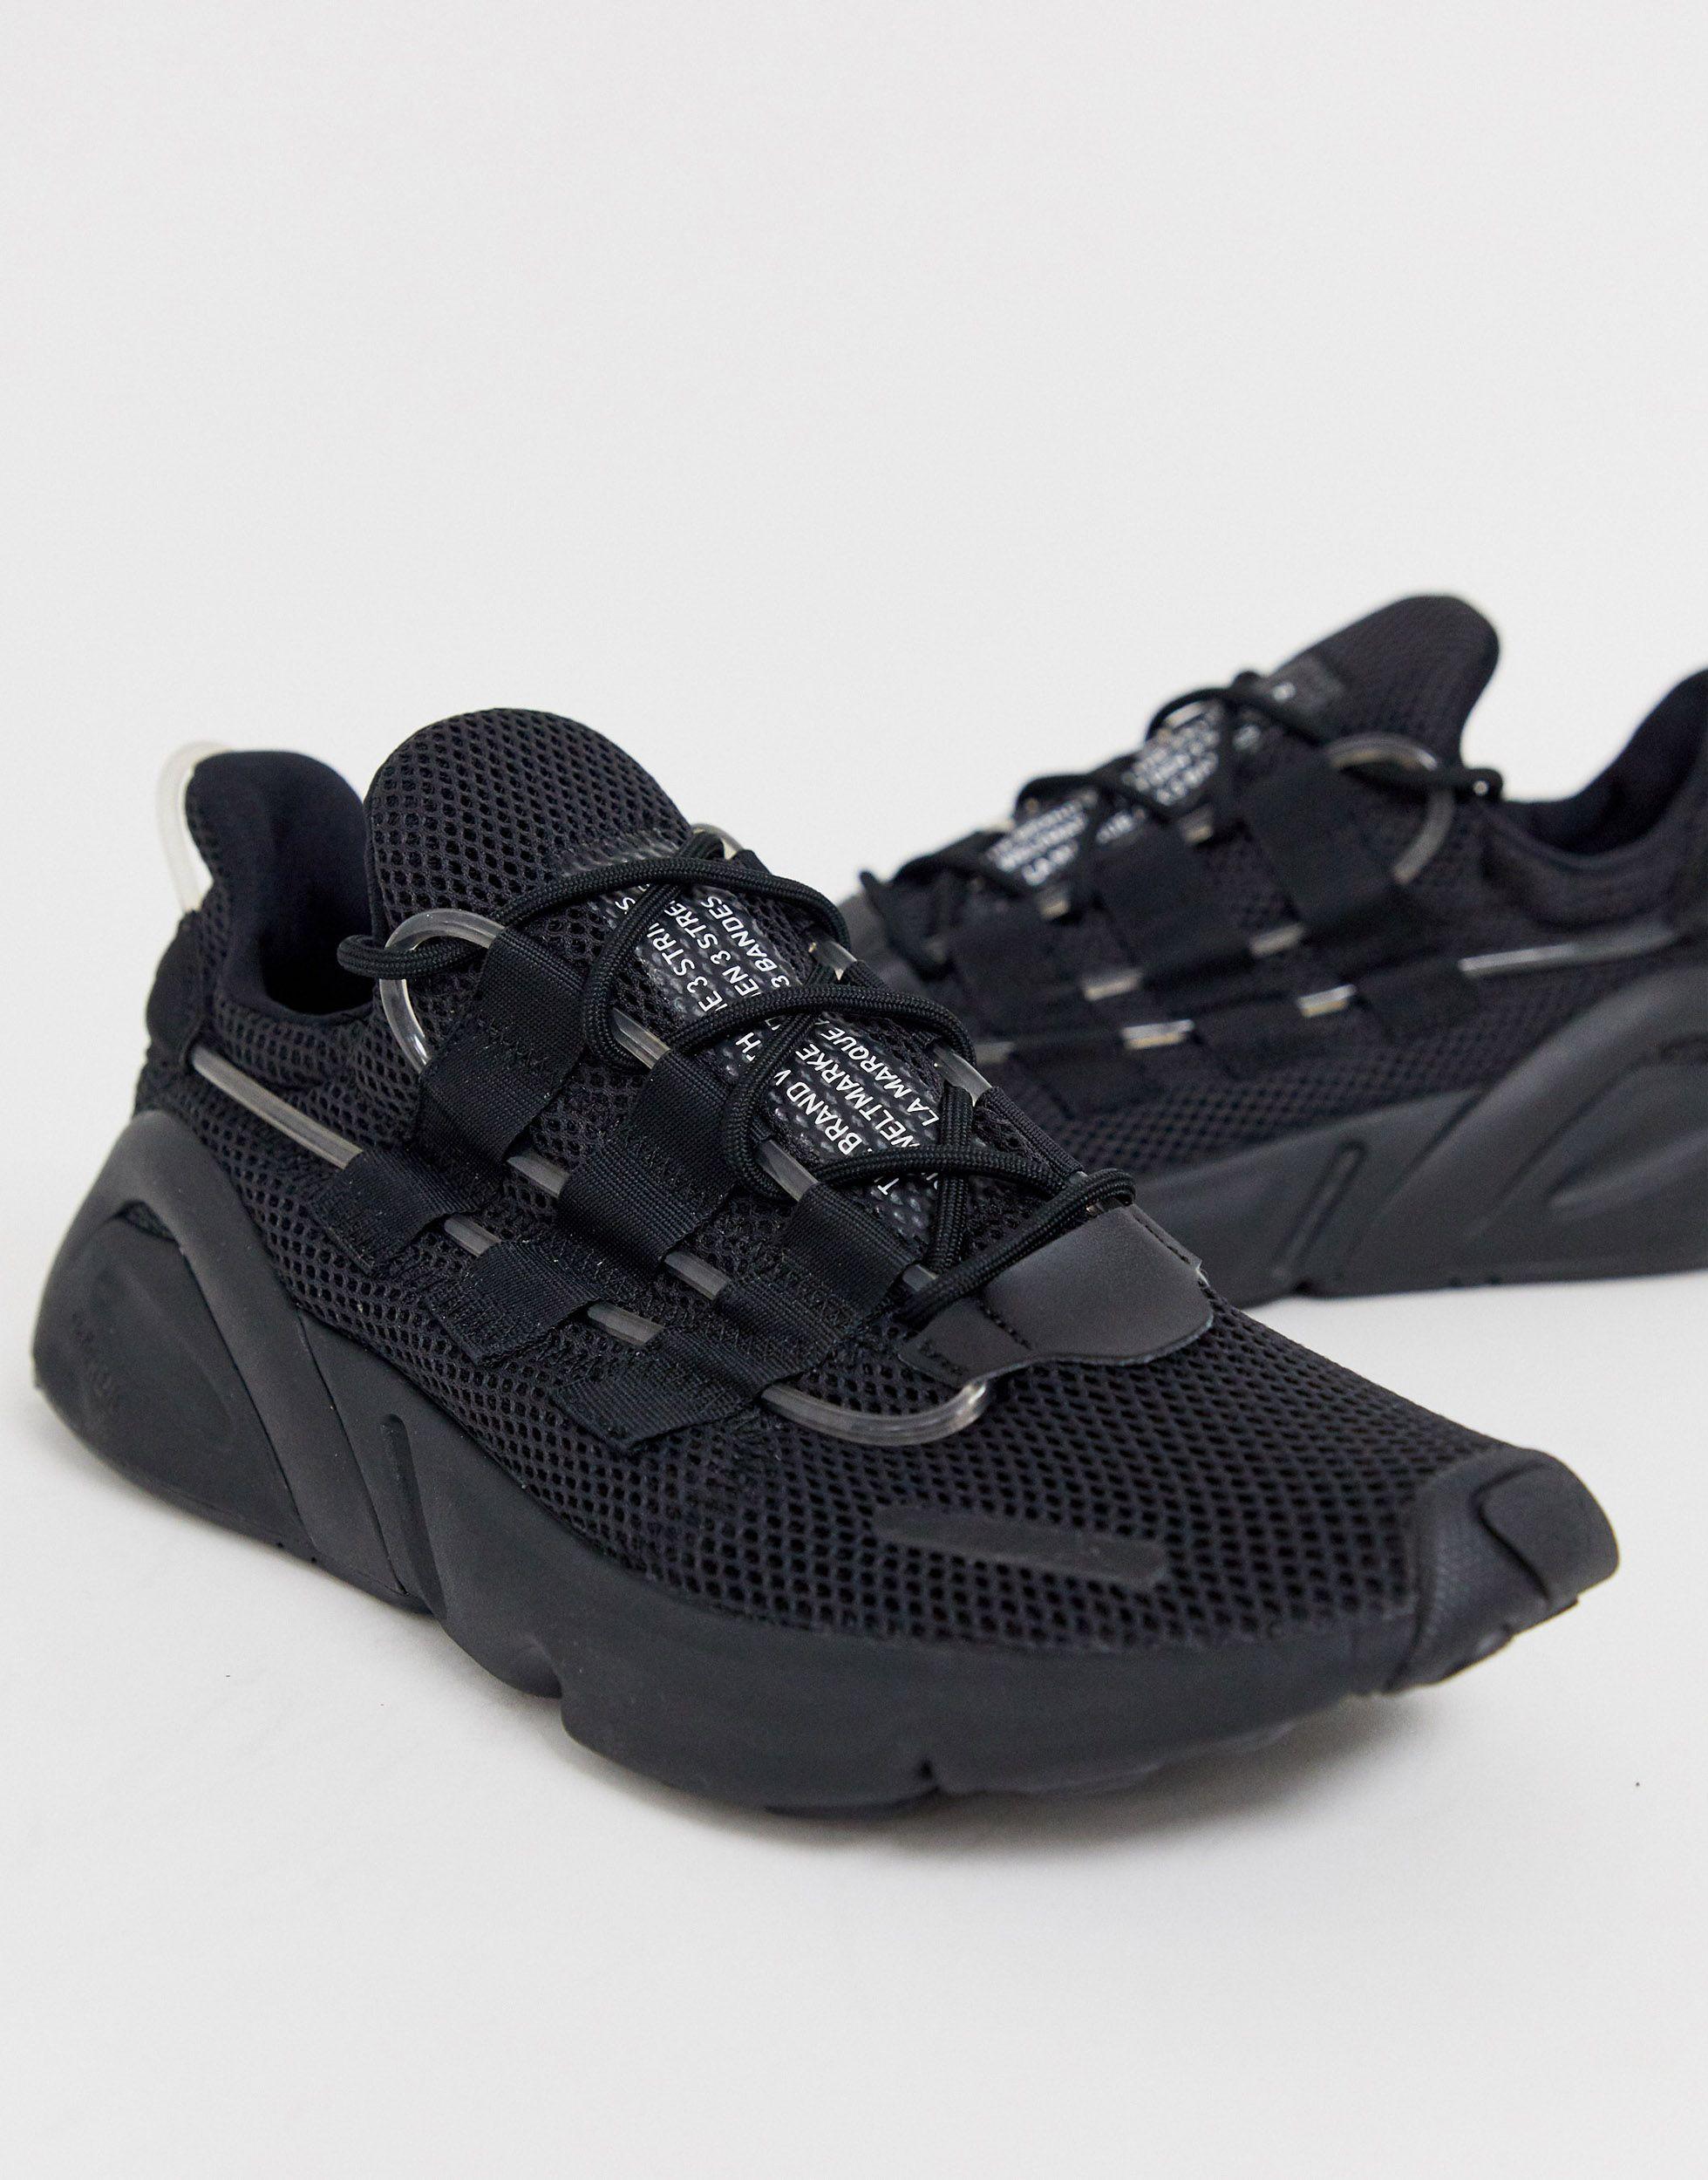 adidas originals lxcon adiprene trainers in triple black